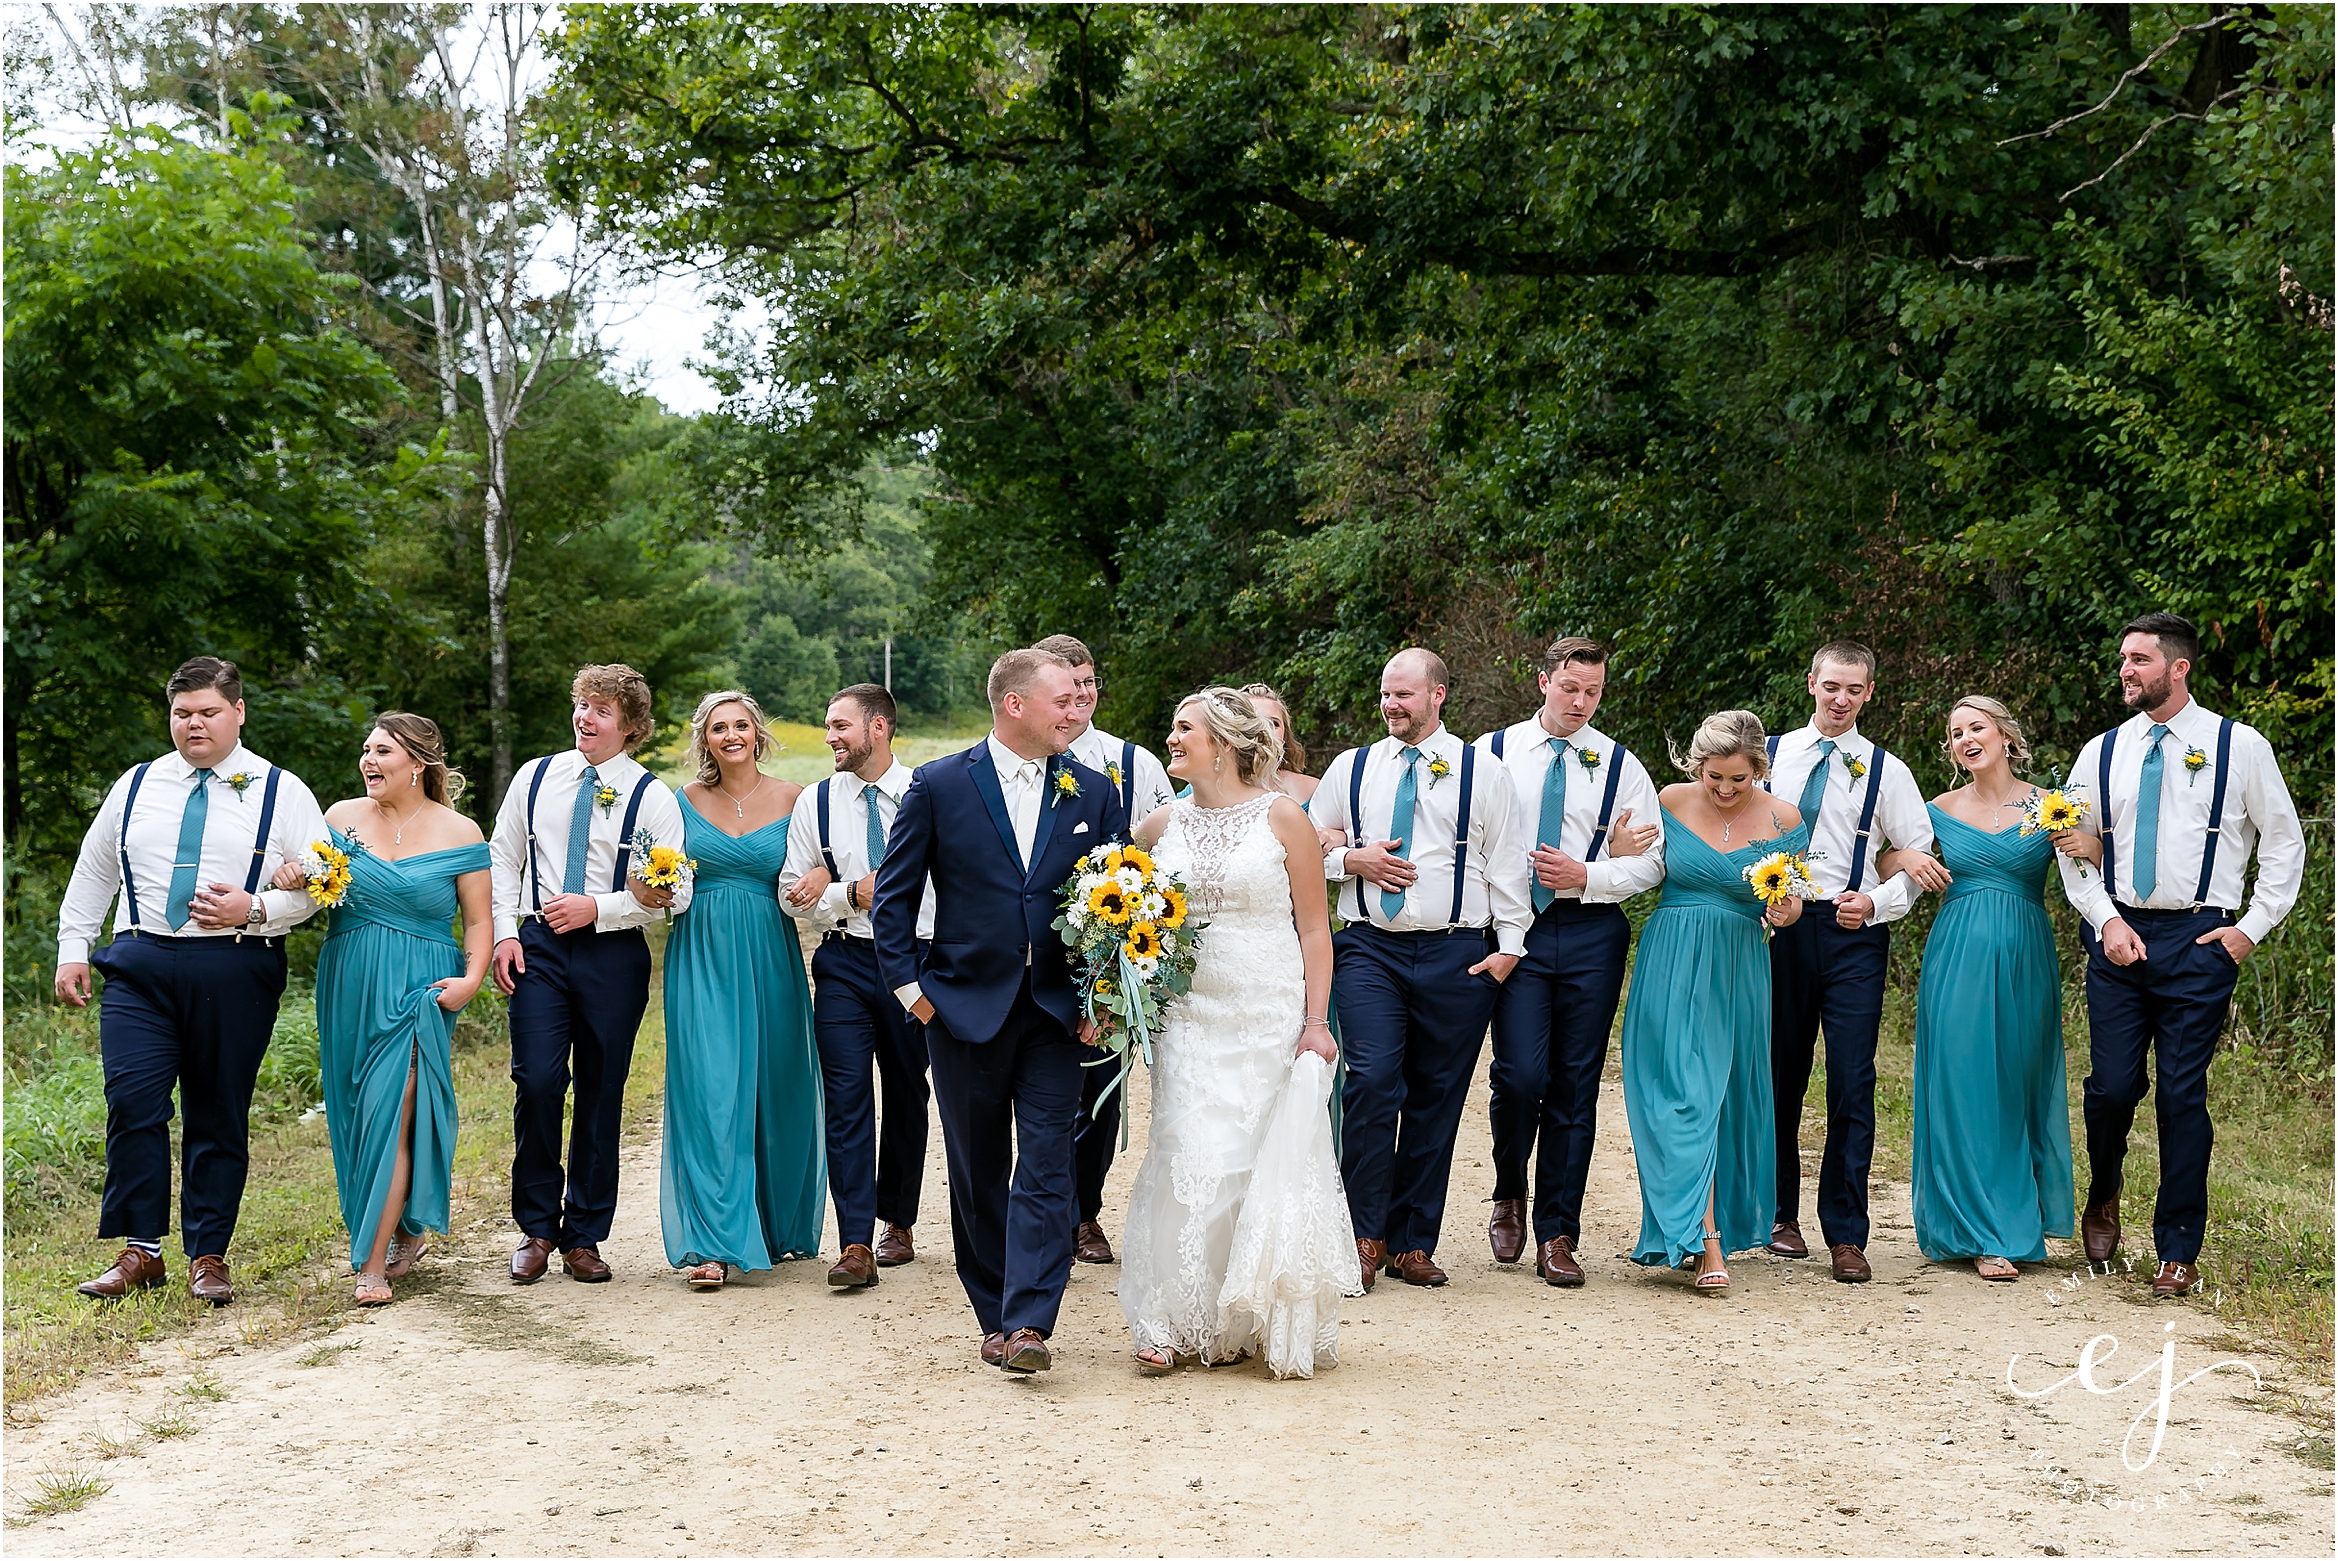 groomsmen in suspenders walking and laughing blair wisconsin wedding bridesmaids in teal dresses